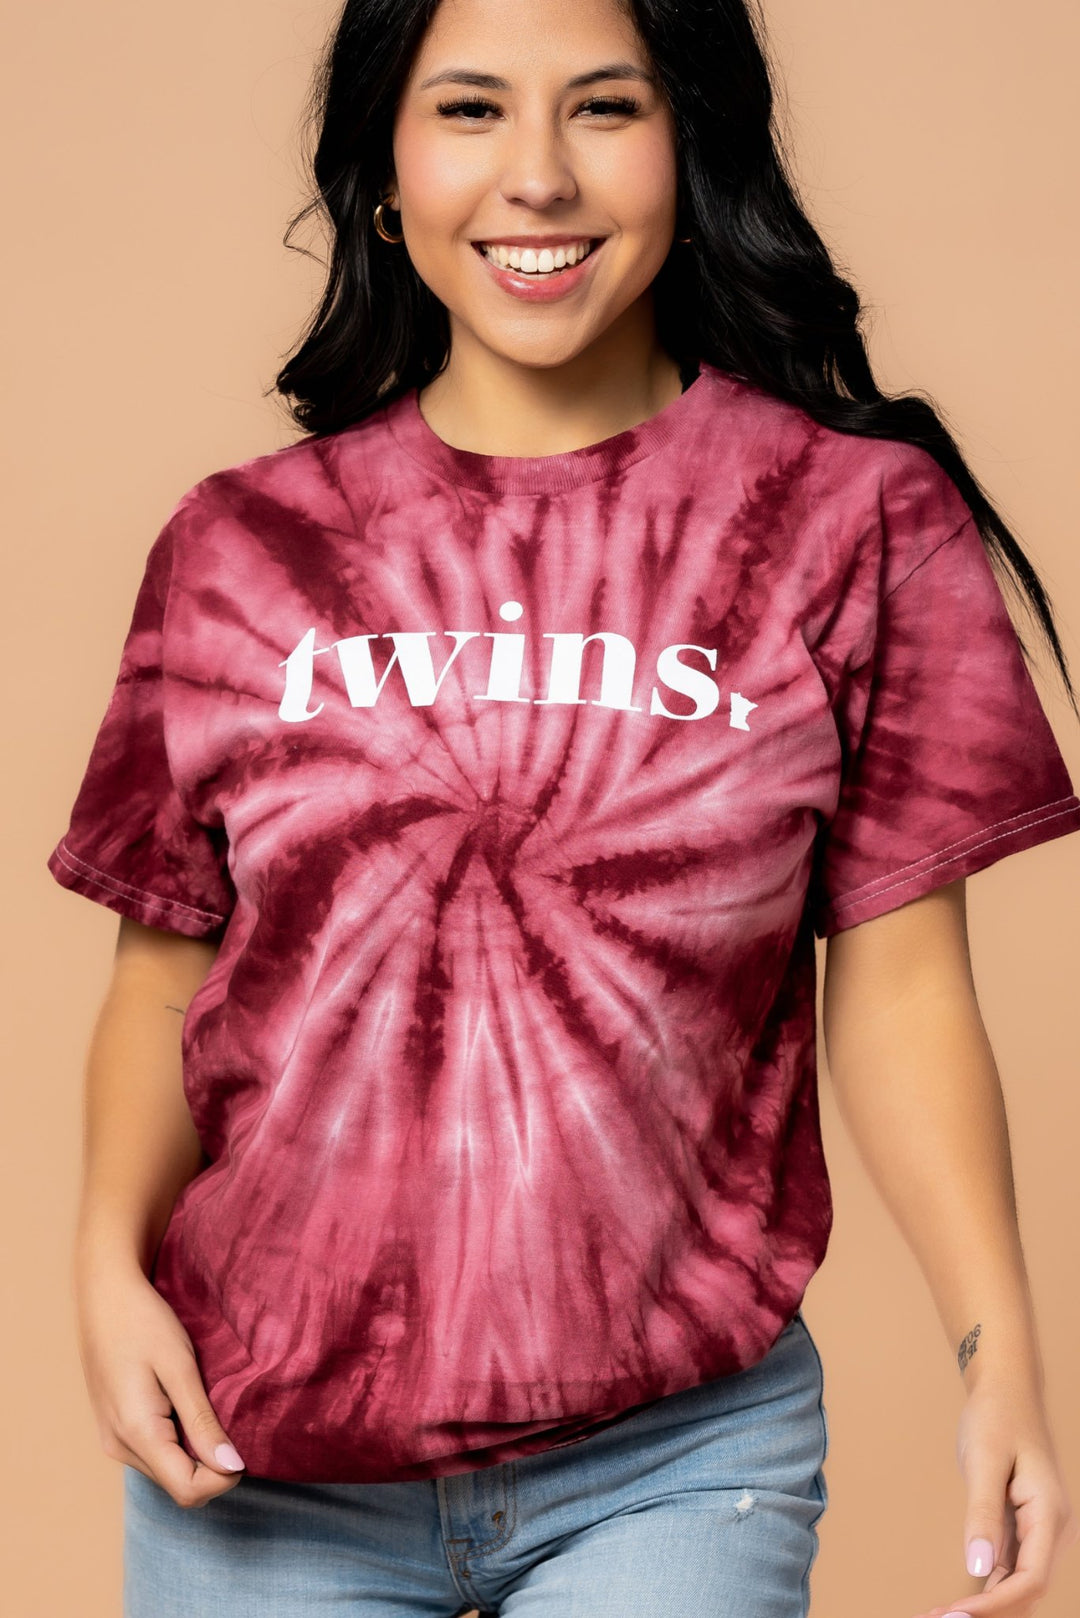 Twins Tie Dye Tee - Fan Girl Clothing